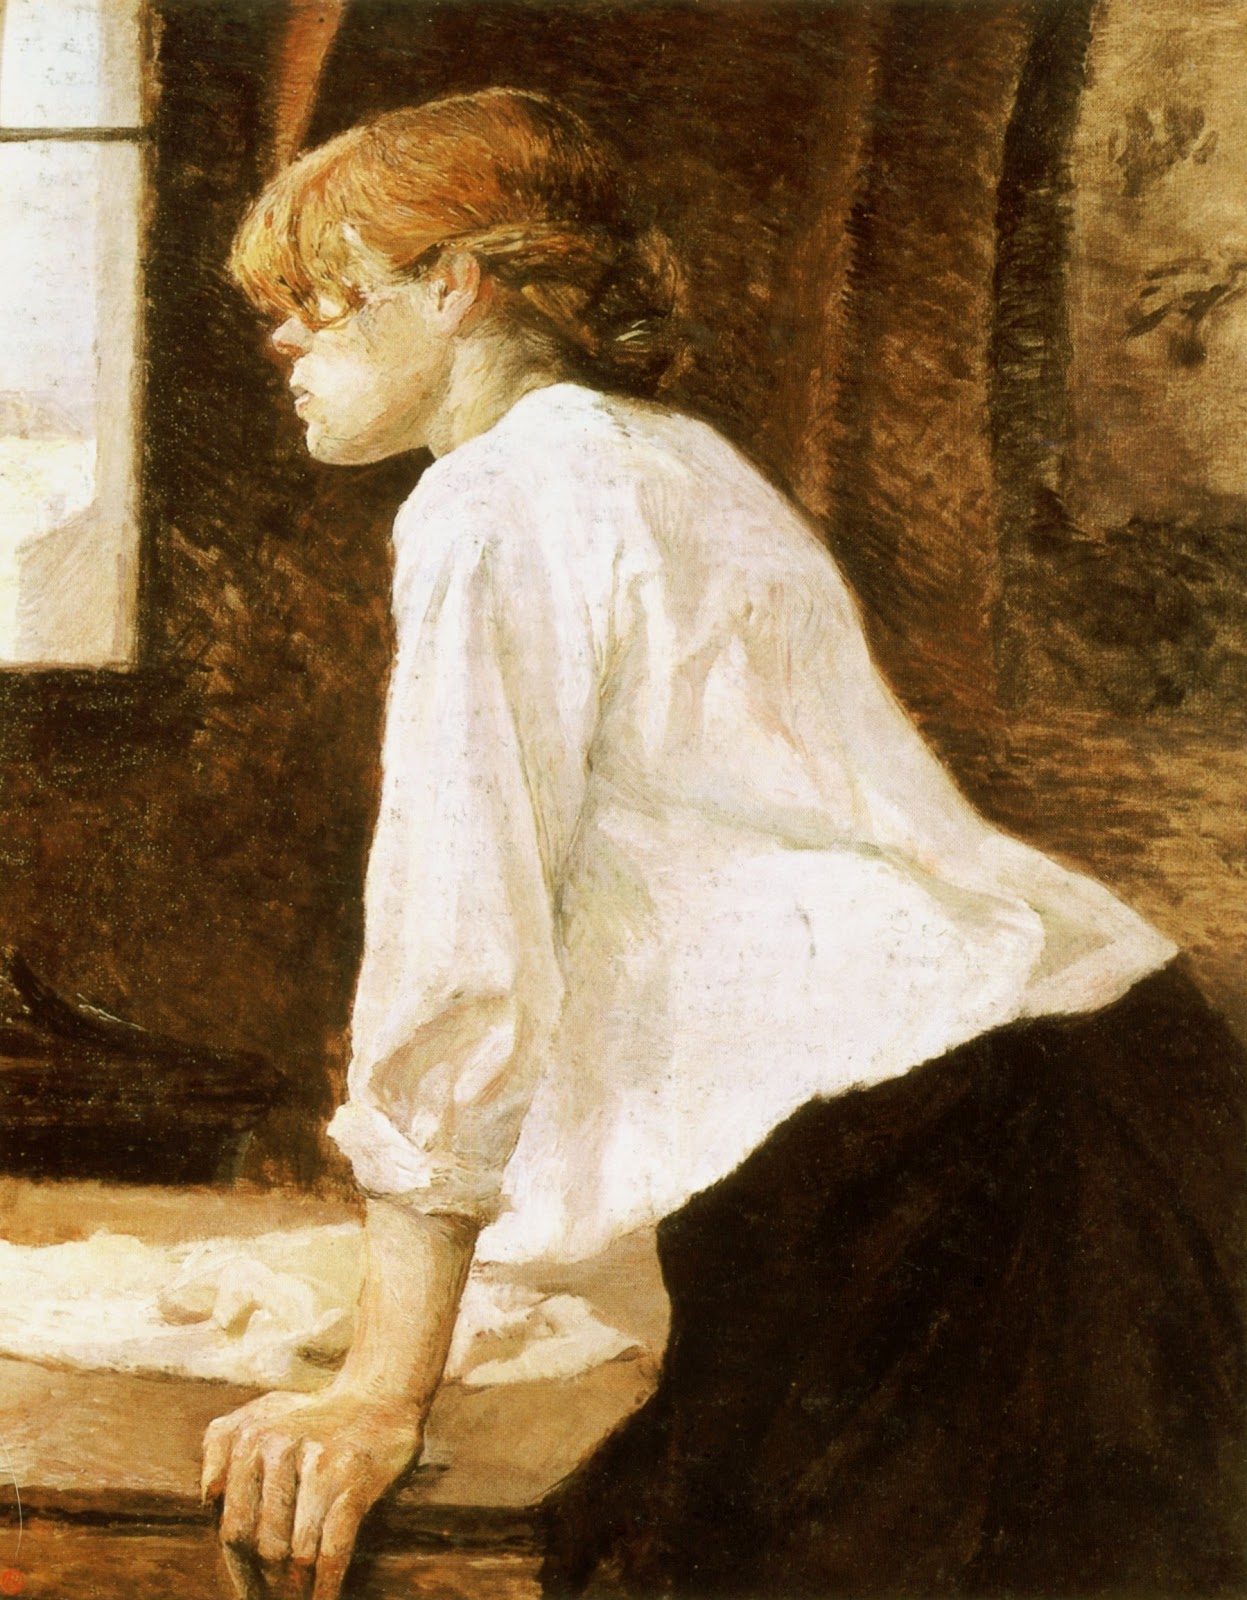 Henri+de+Toulouse+Lautrec-1864-1901 (132).jpg